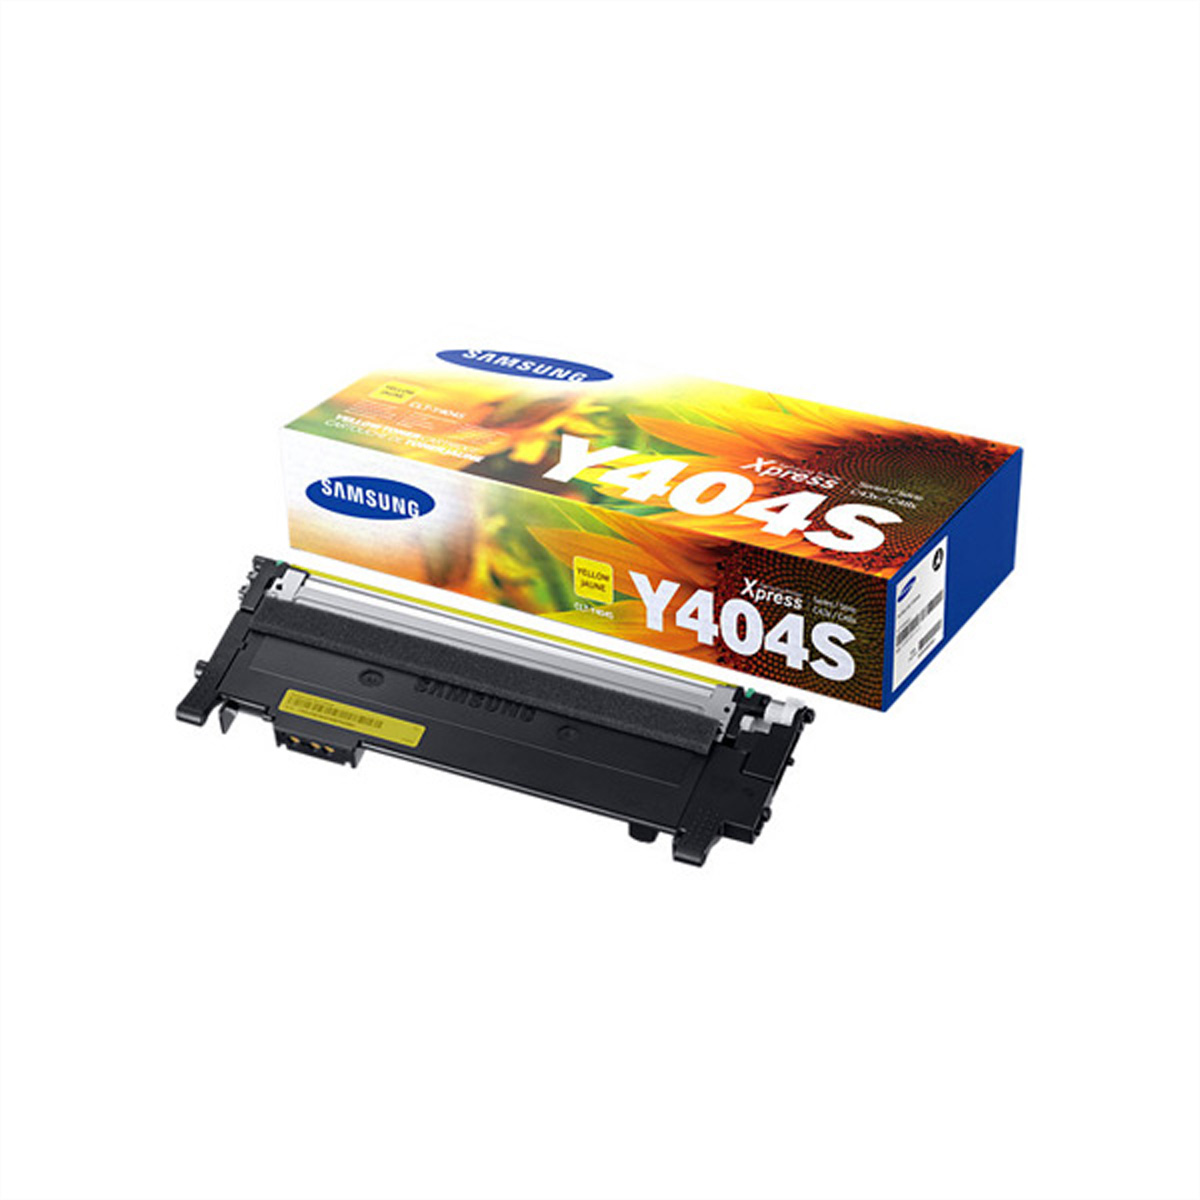 HP SU444A, Toner yellow 1.000 Seiten für Xpress C430 / Xpress C430W / Xpress C480 / Xpress C480W